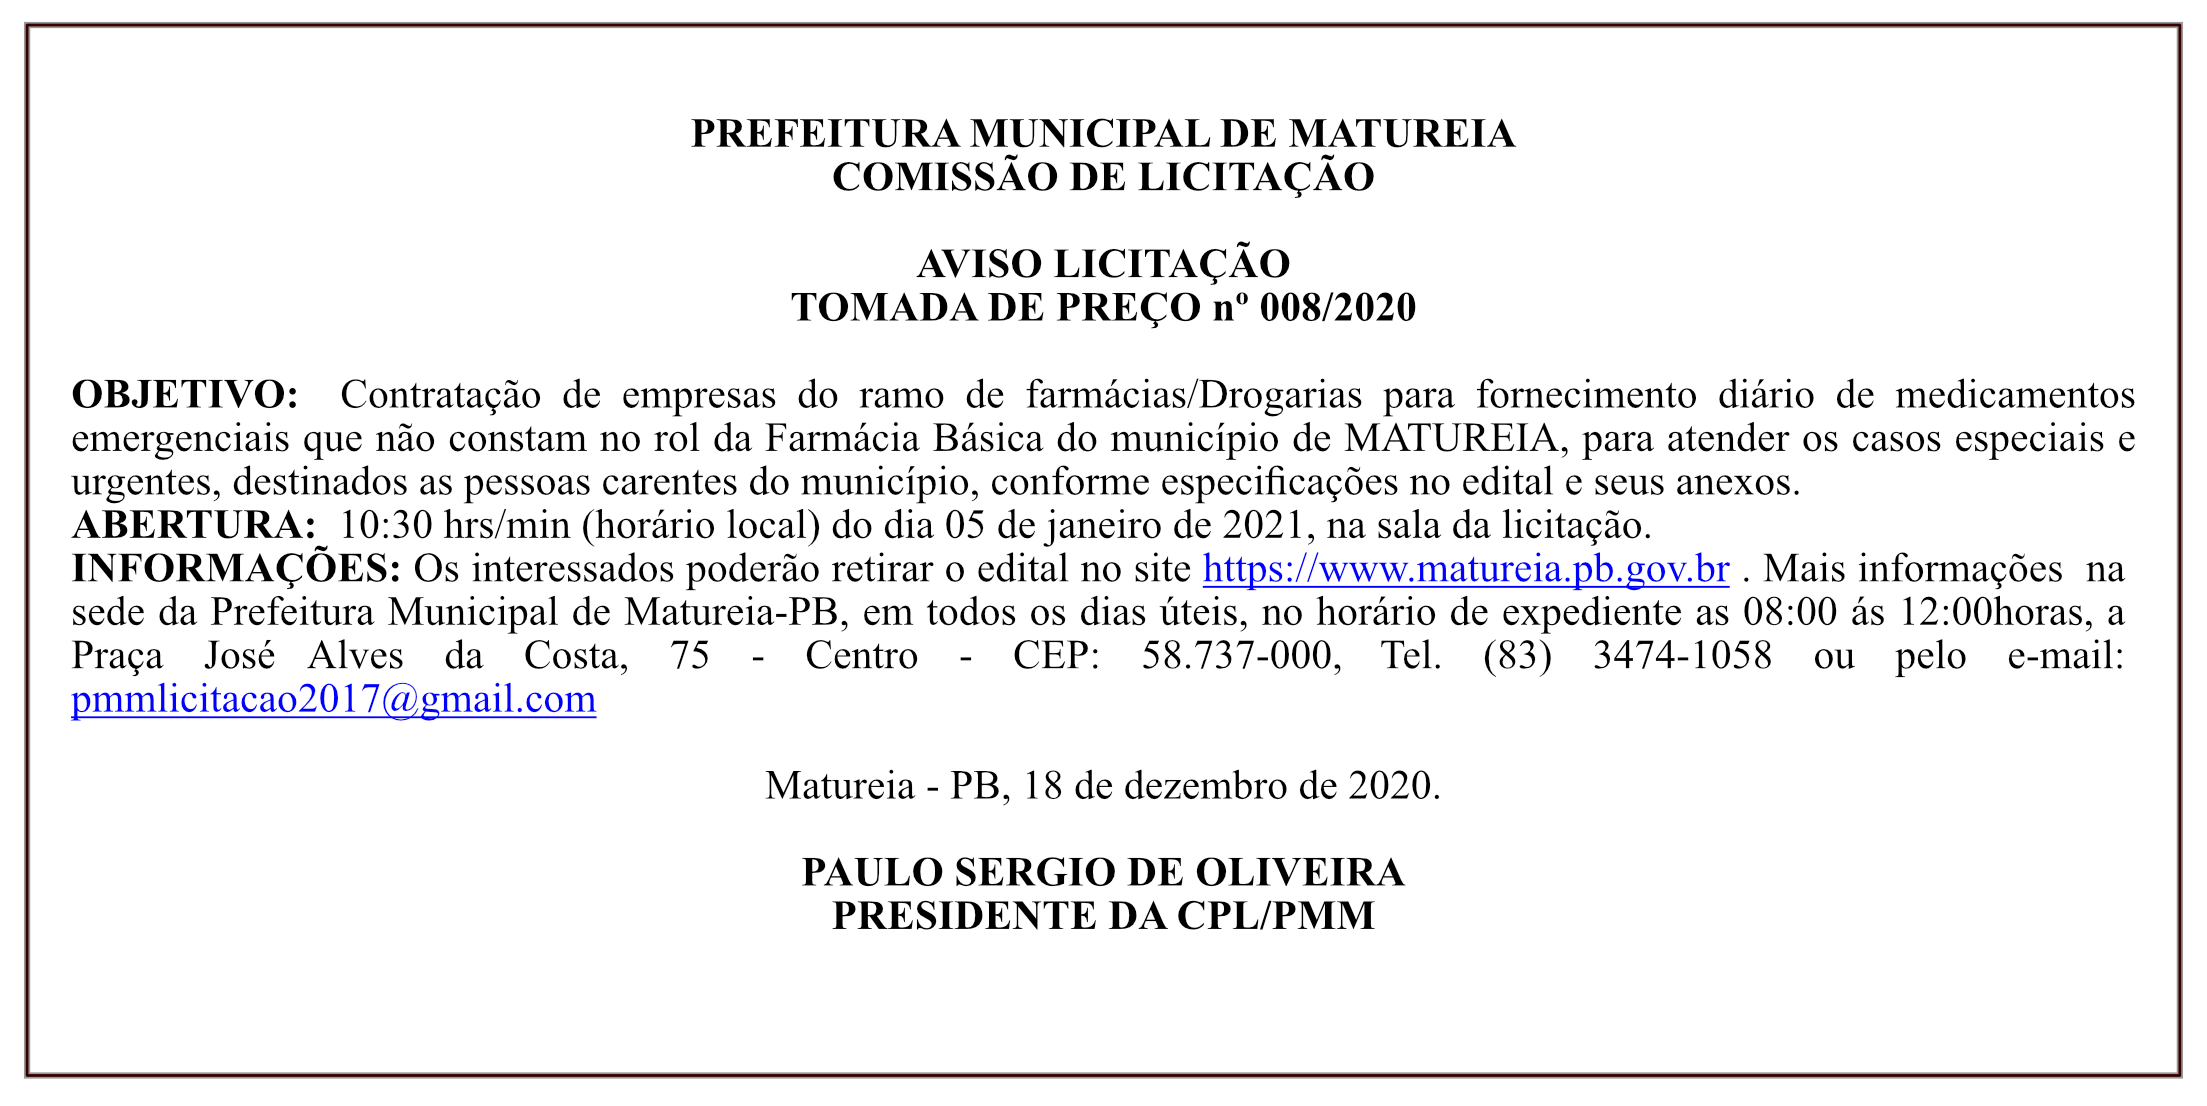 PREFEITURA MUNICIPAL DE MATUREIA – COMISSÃO DE LICITAÇÃO – AVISO LICITAÇÃO – TOMADA DE PREÇO nº 008/2020